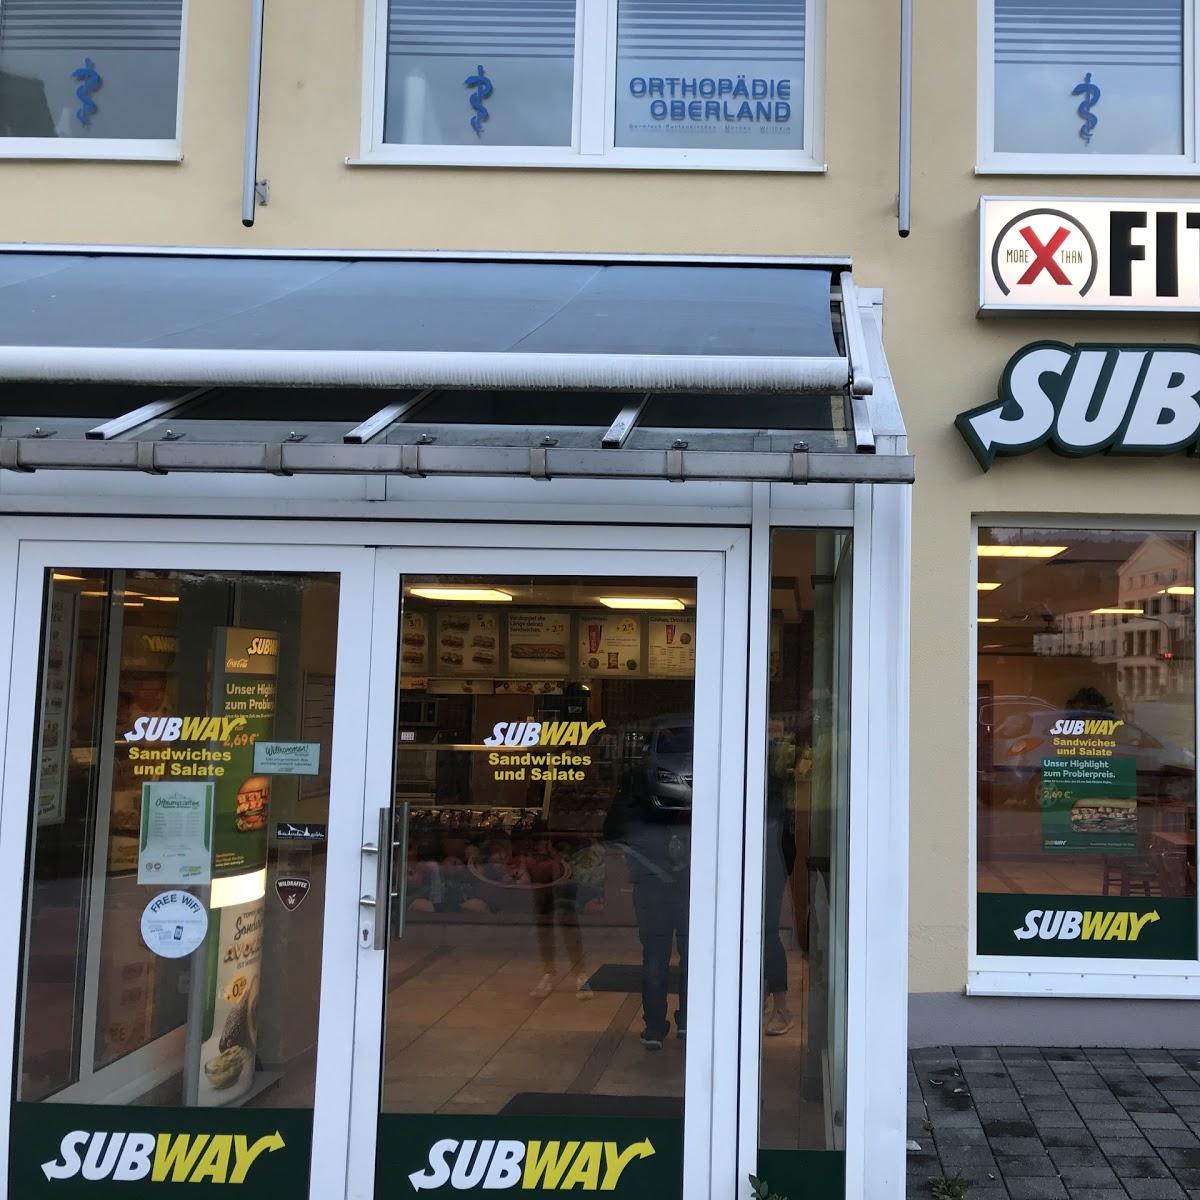 Restaurant "Subway" in Garmisch-Partenkirchen